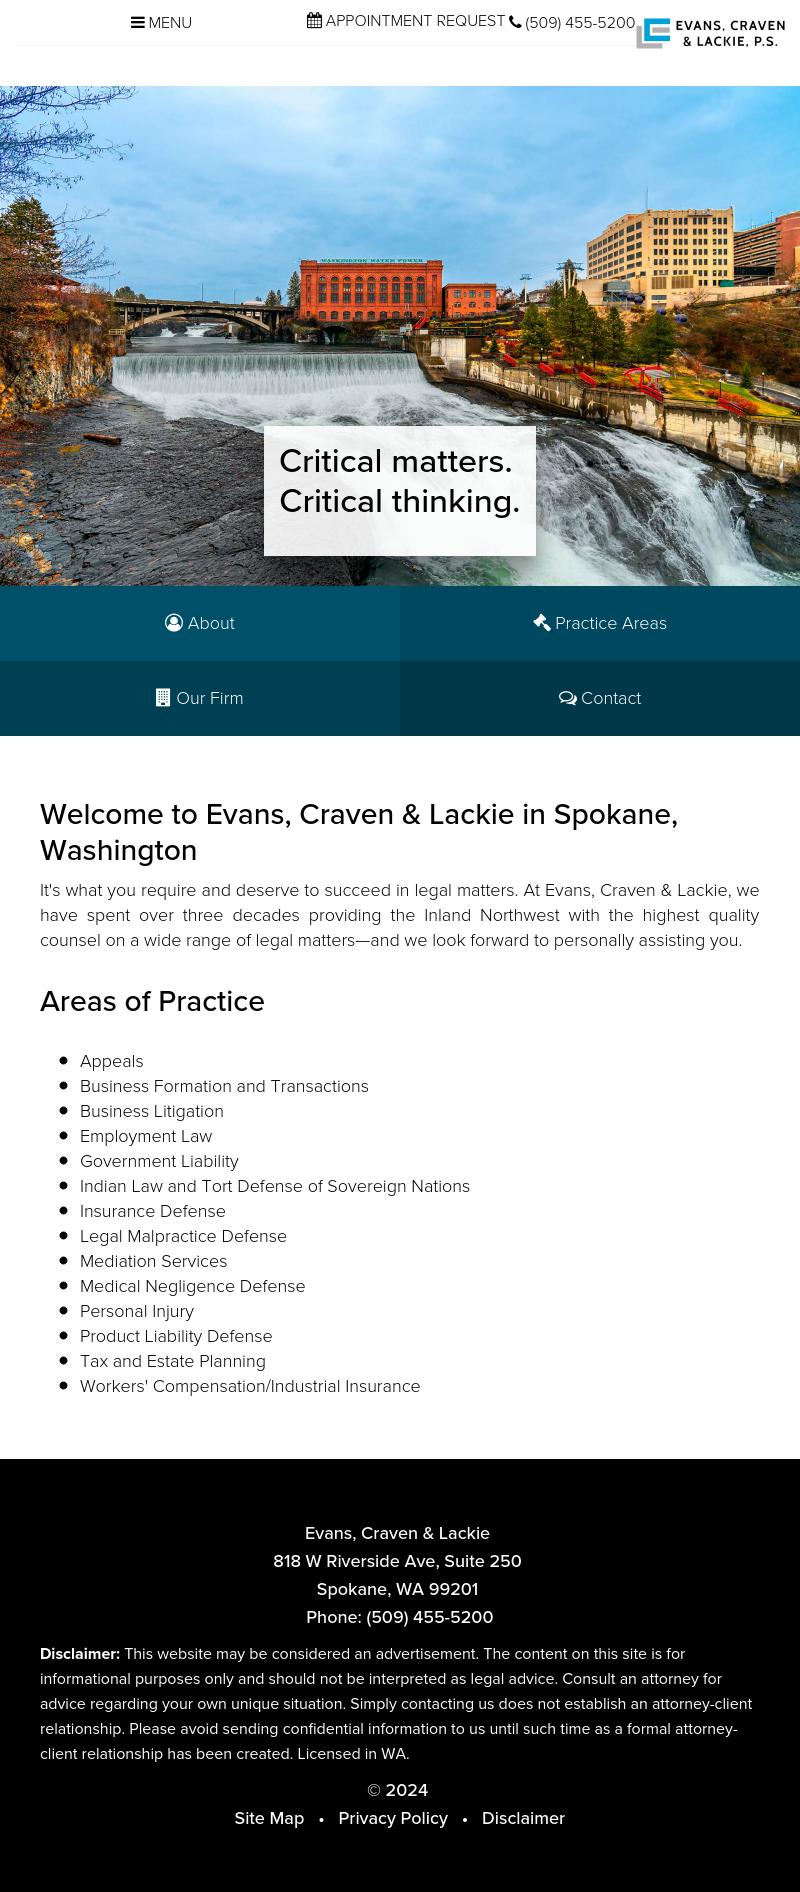 Evans Craven & Lackie PS. - Spokane WA Lawyers